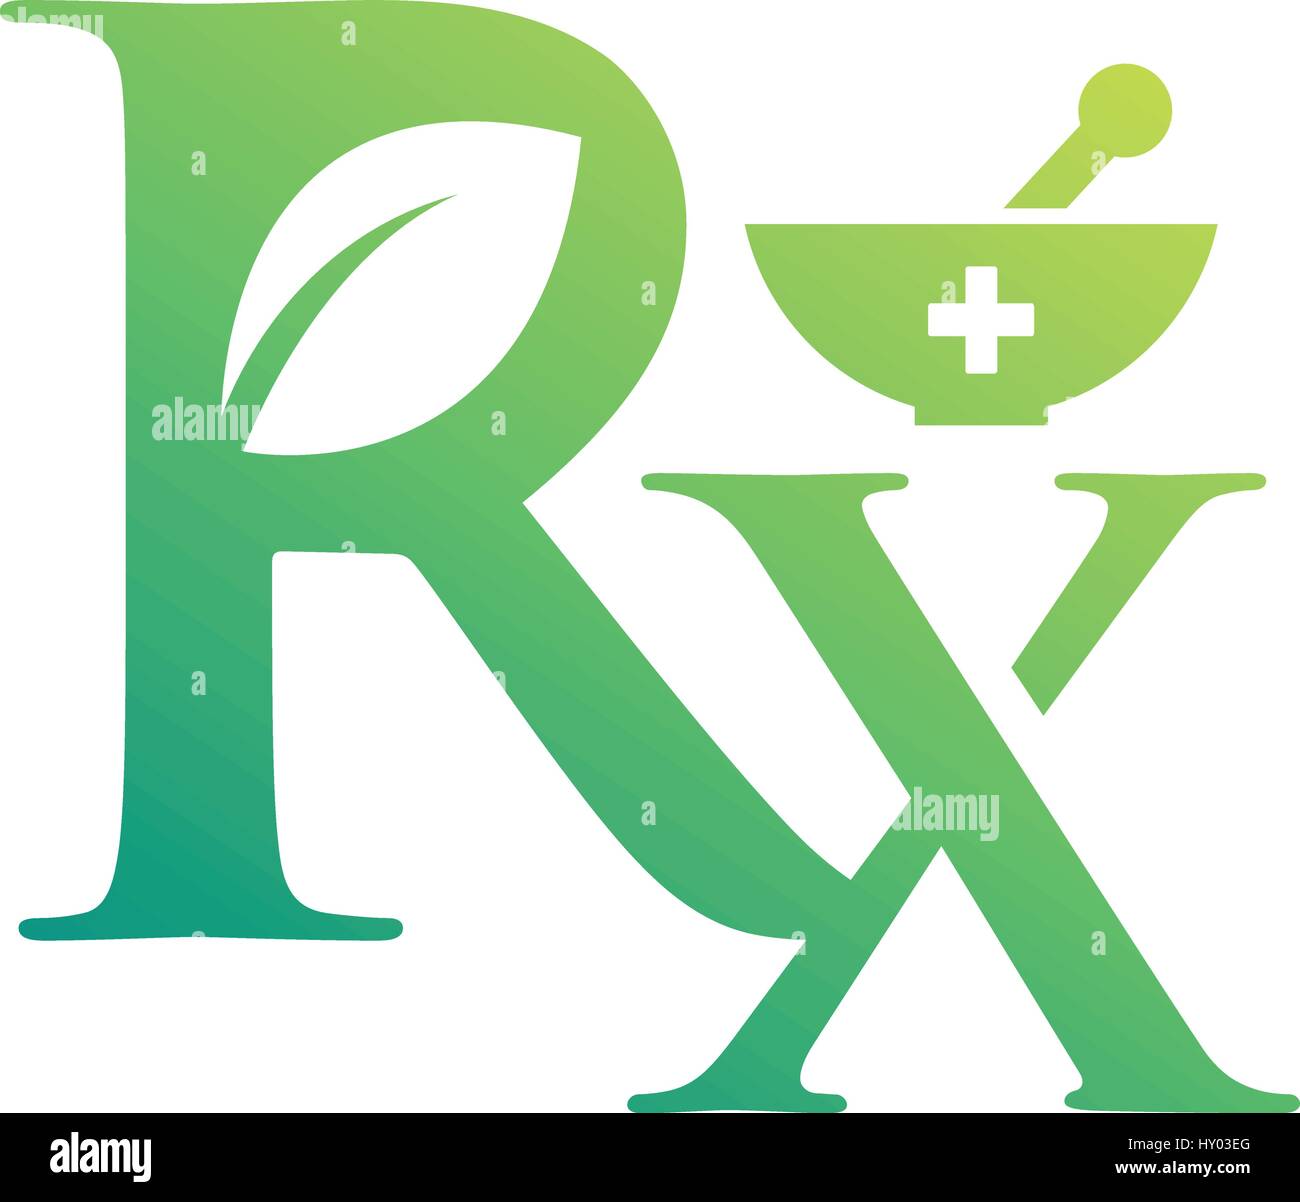 pharmacy symbols images